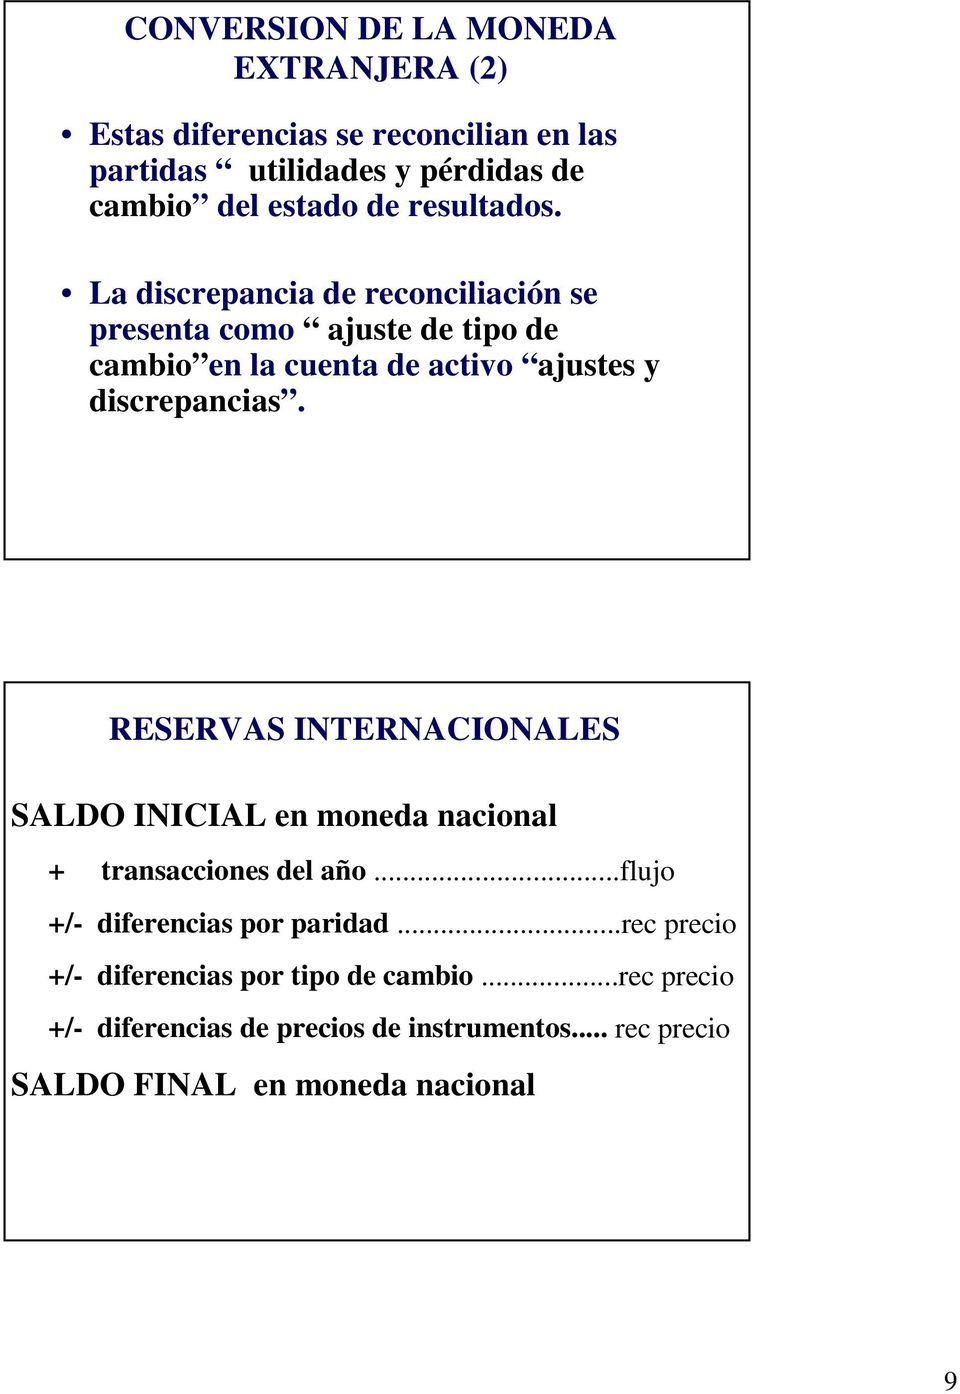 RESERVAS INTERNACIONALES SALDO INICIAL en moneda nacional + transacciones del año...flujo +/- diferencias por paridad.